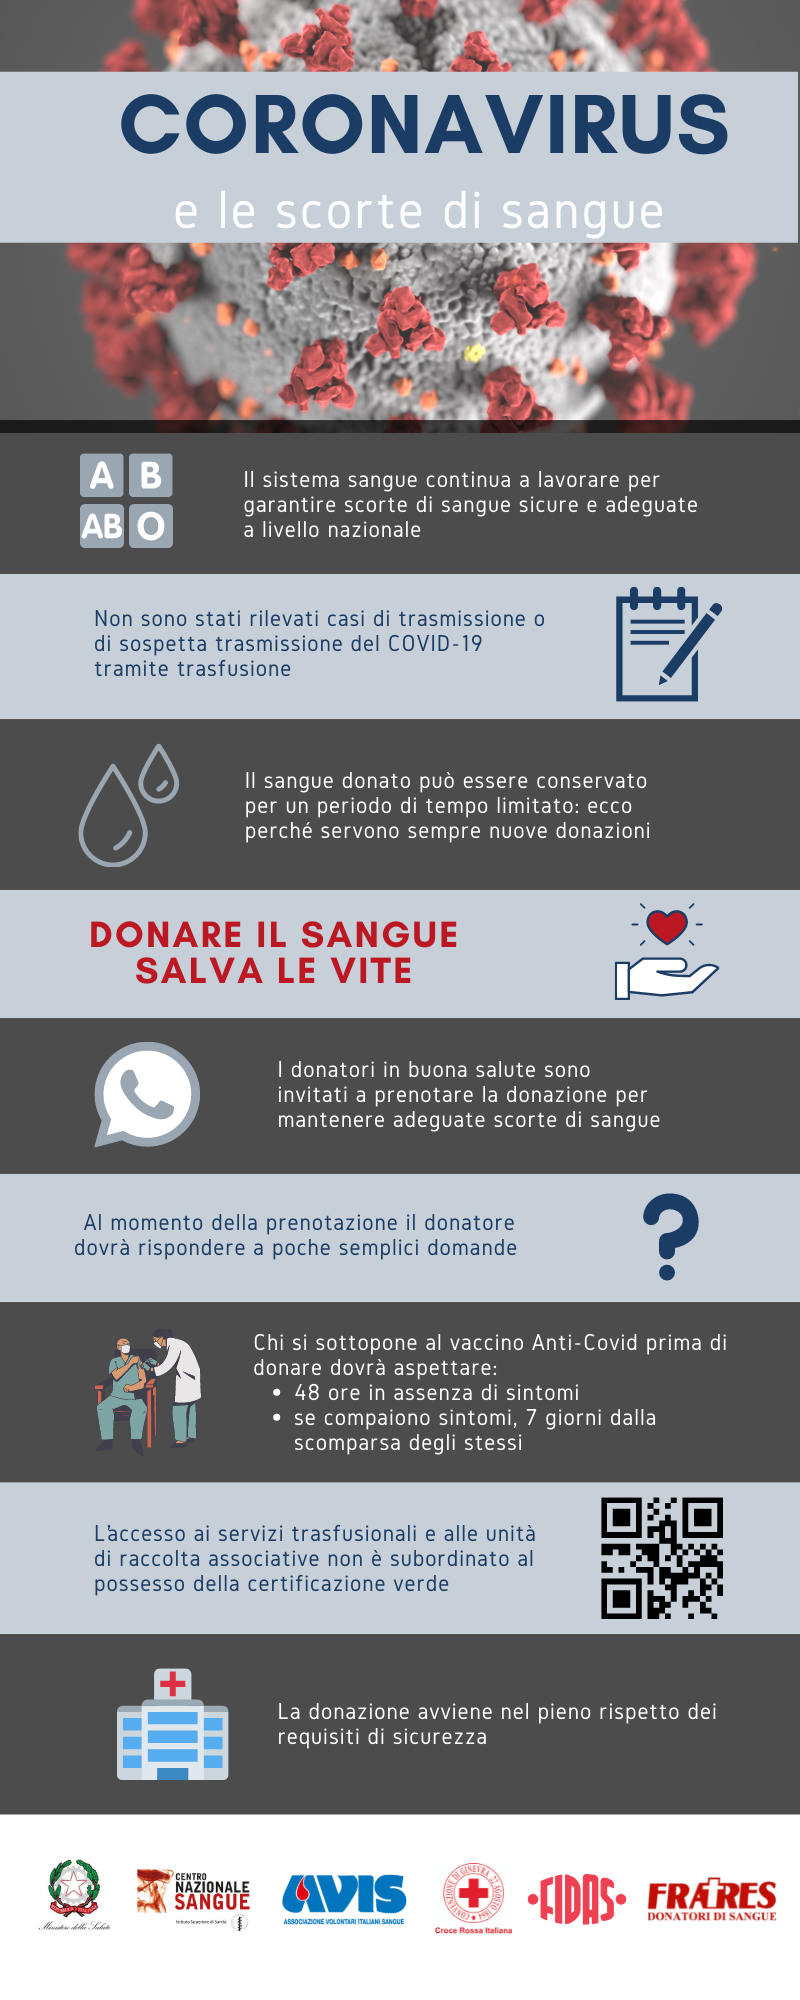 Donazioni Covid19 - Croce Rossa Italiana